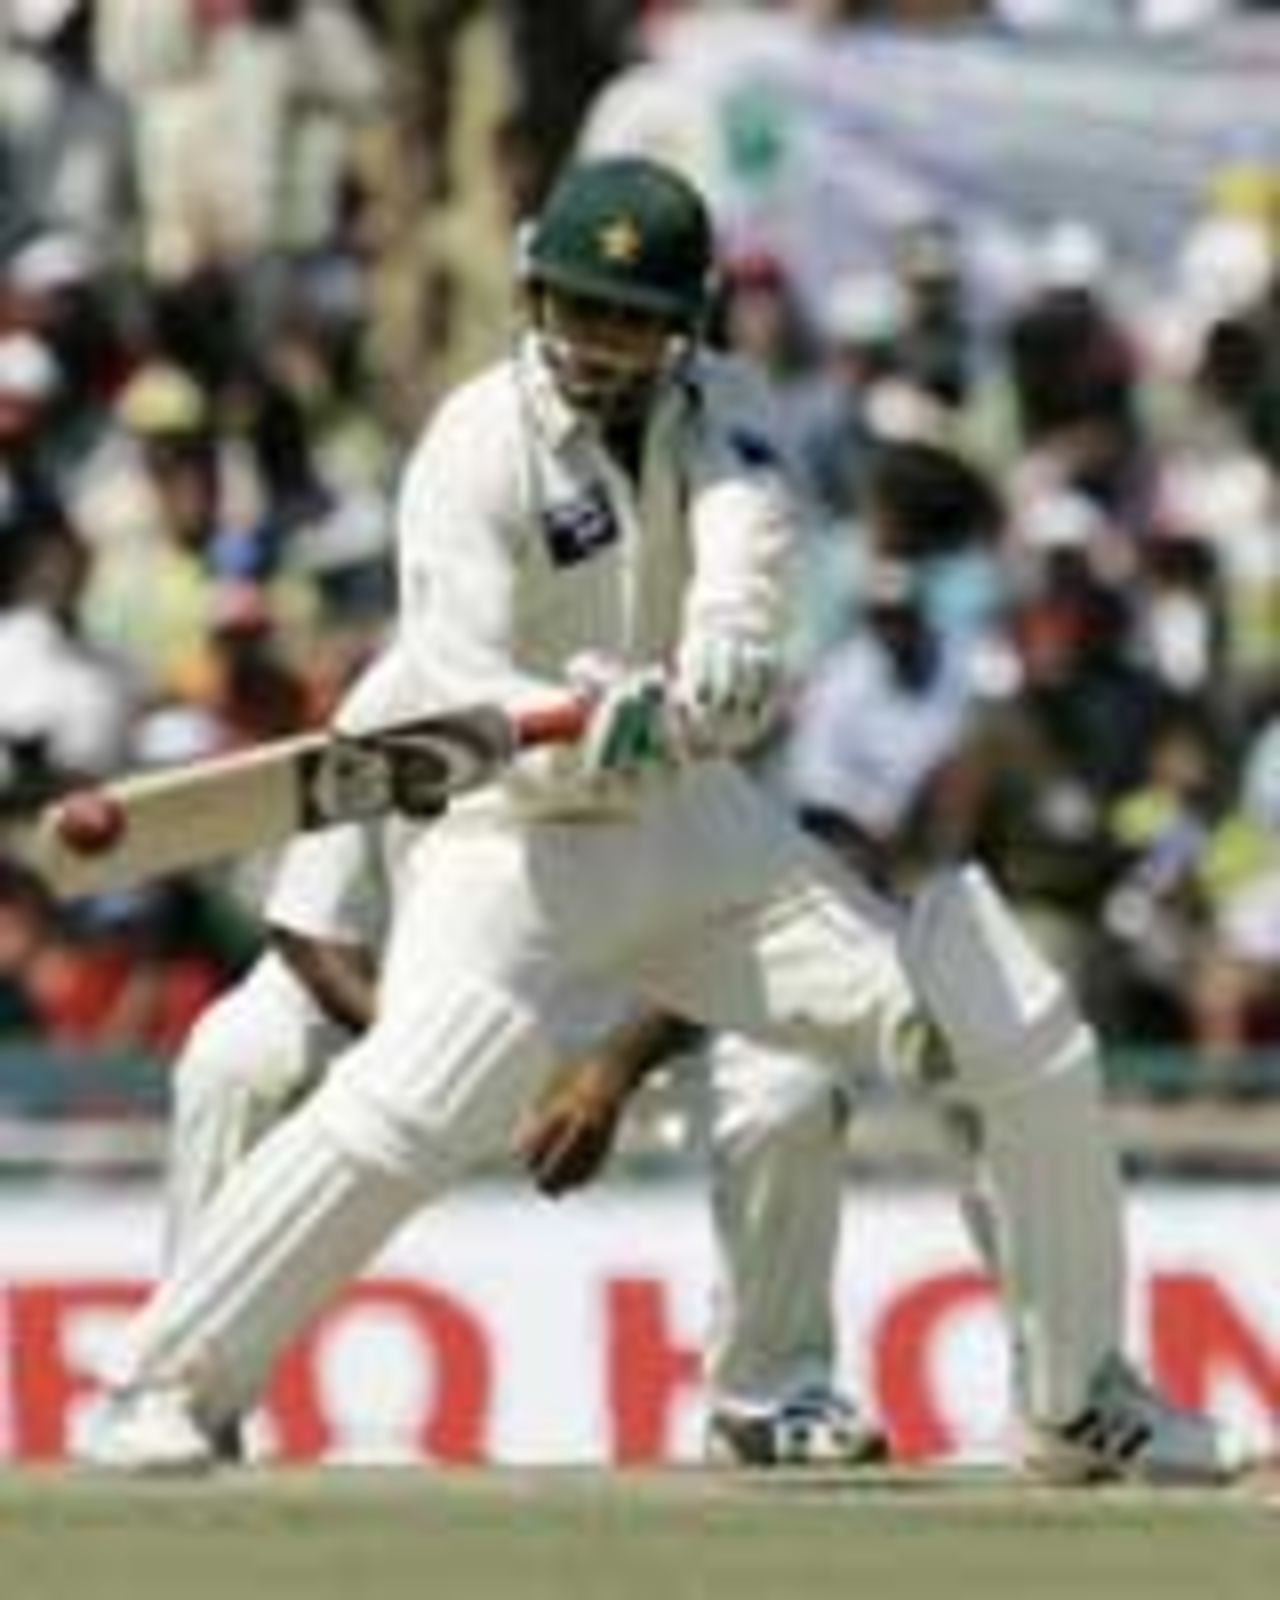 Abdul Razzaq cuts, India v Pakistan, 1st Test, Mohali, 5th day, March 12, 2005